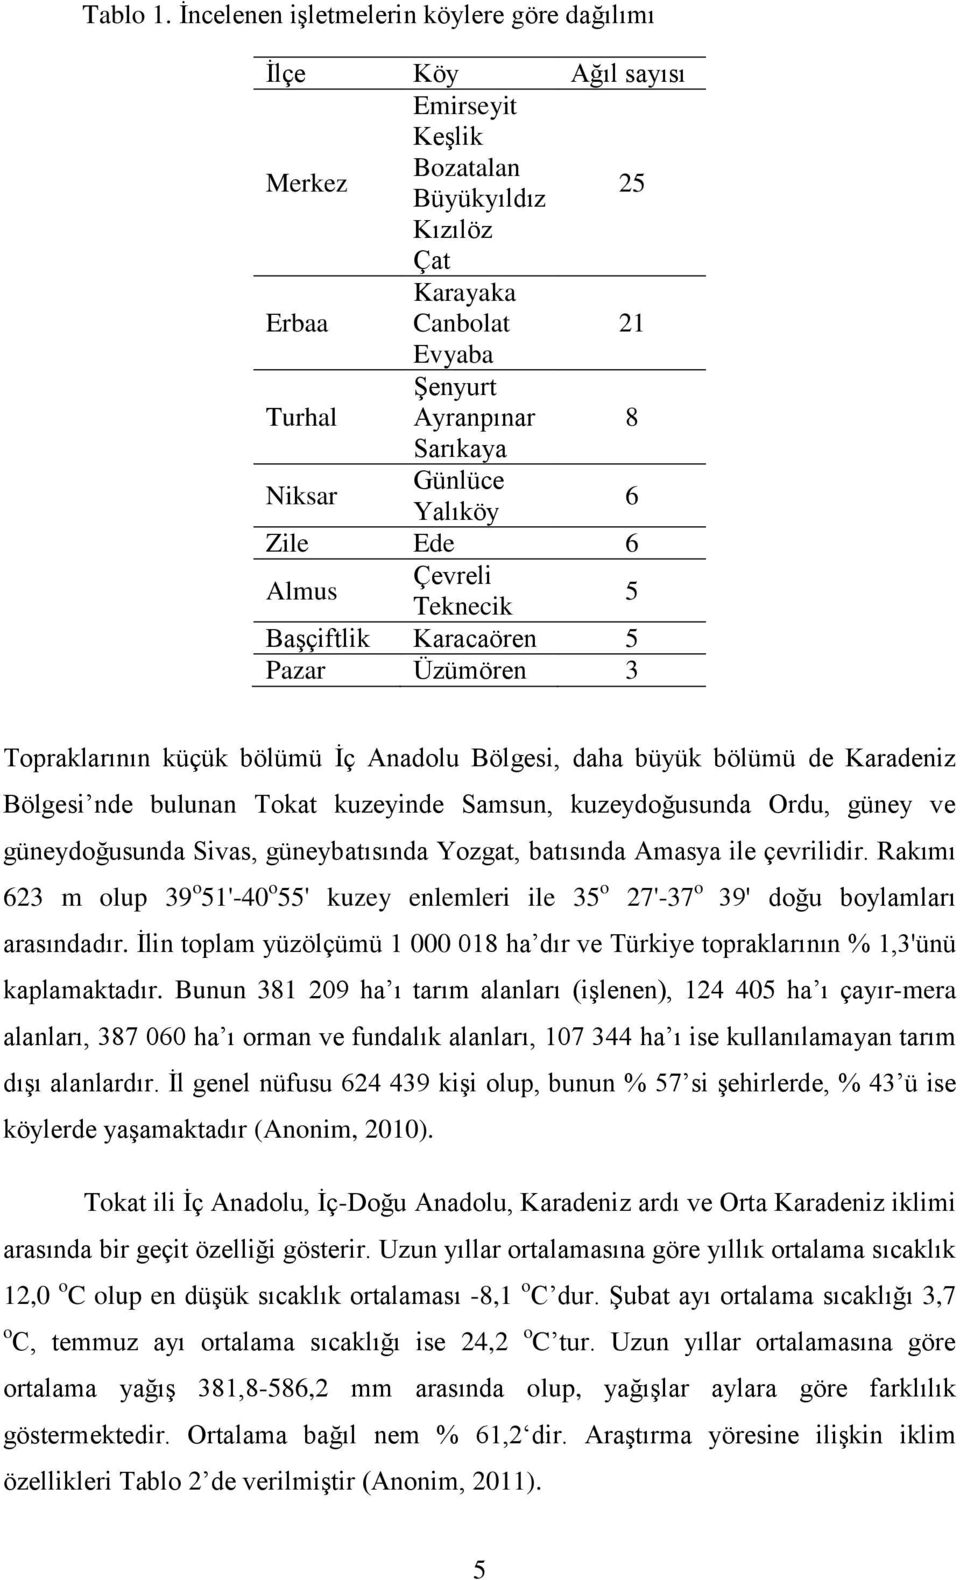 Niksar Günlüce Yalıköy 6 Zile Ede 6 Almus Çevreli Teknecik 5 Başçiftlik Karacaören 5 Pazar Üzümören 3 Topraklarının küçük bölümü İç Anadolu Bölgesi, daha büyük bölümü de Karadeniz Bölgesi nde bulunan